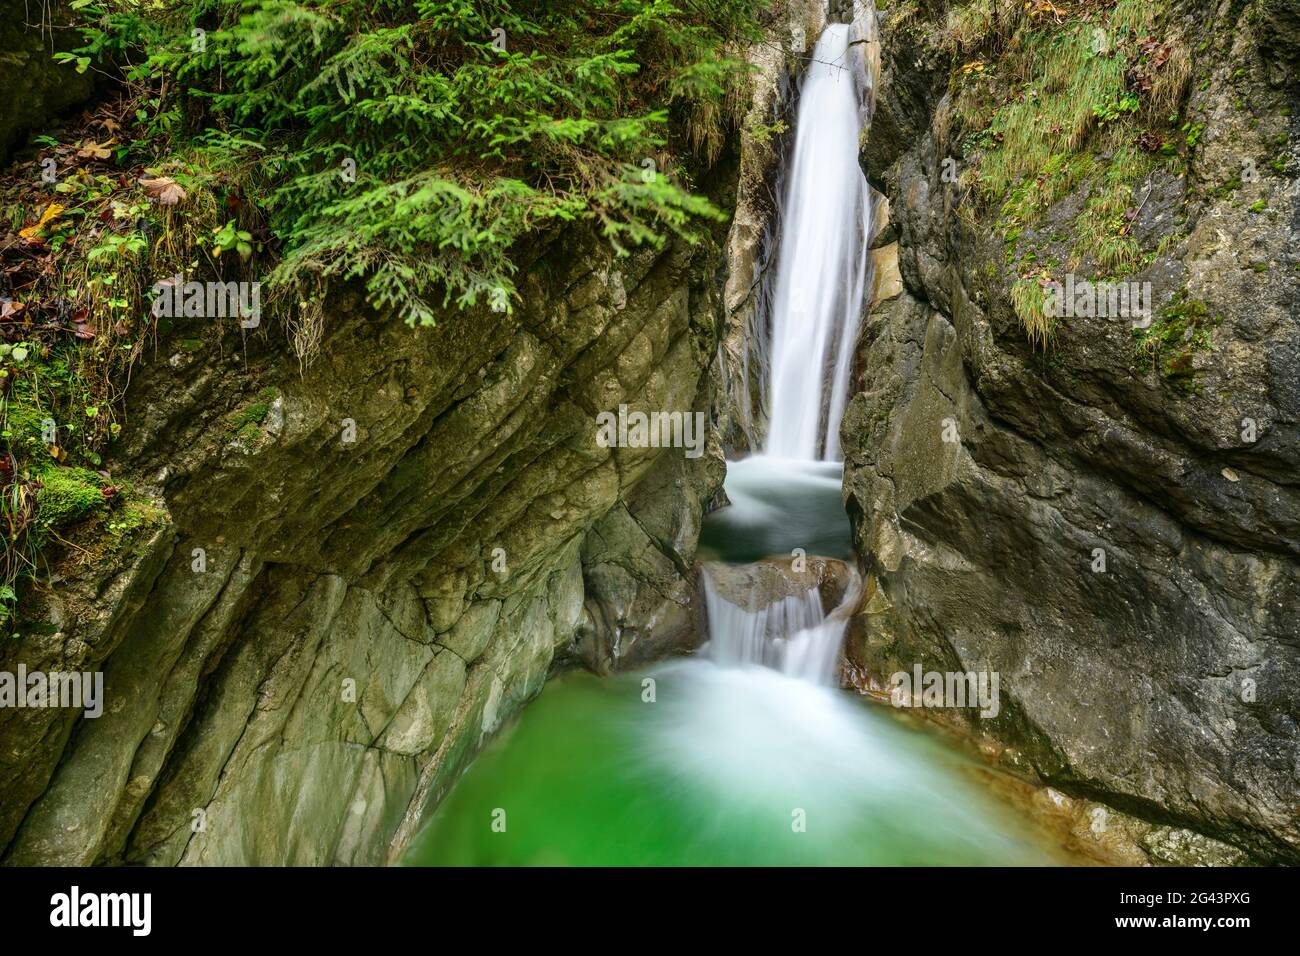 Waterfall, Tatzelwurm, Sudelfeld, Bavarian Alps, Upper Bavaria, Bavaria, Germany Stock Photo